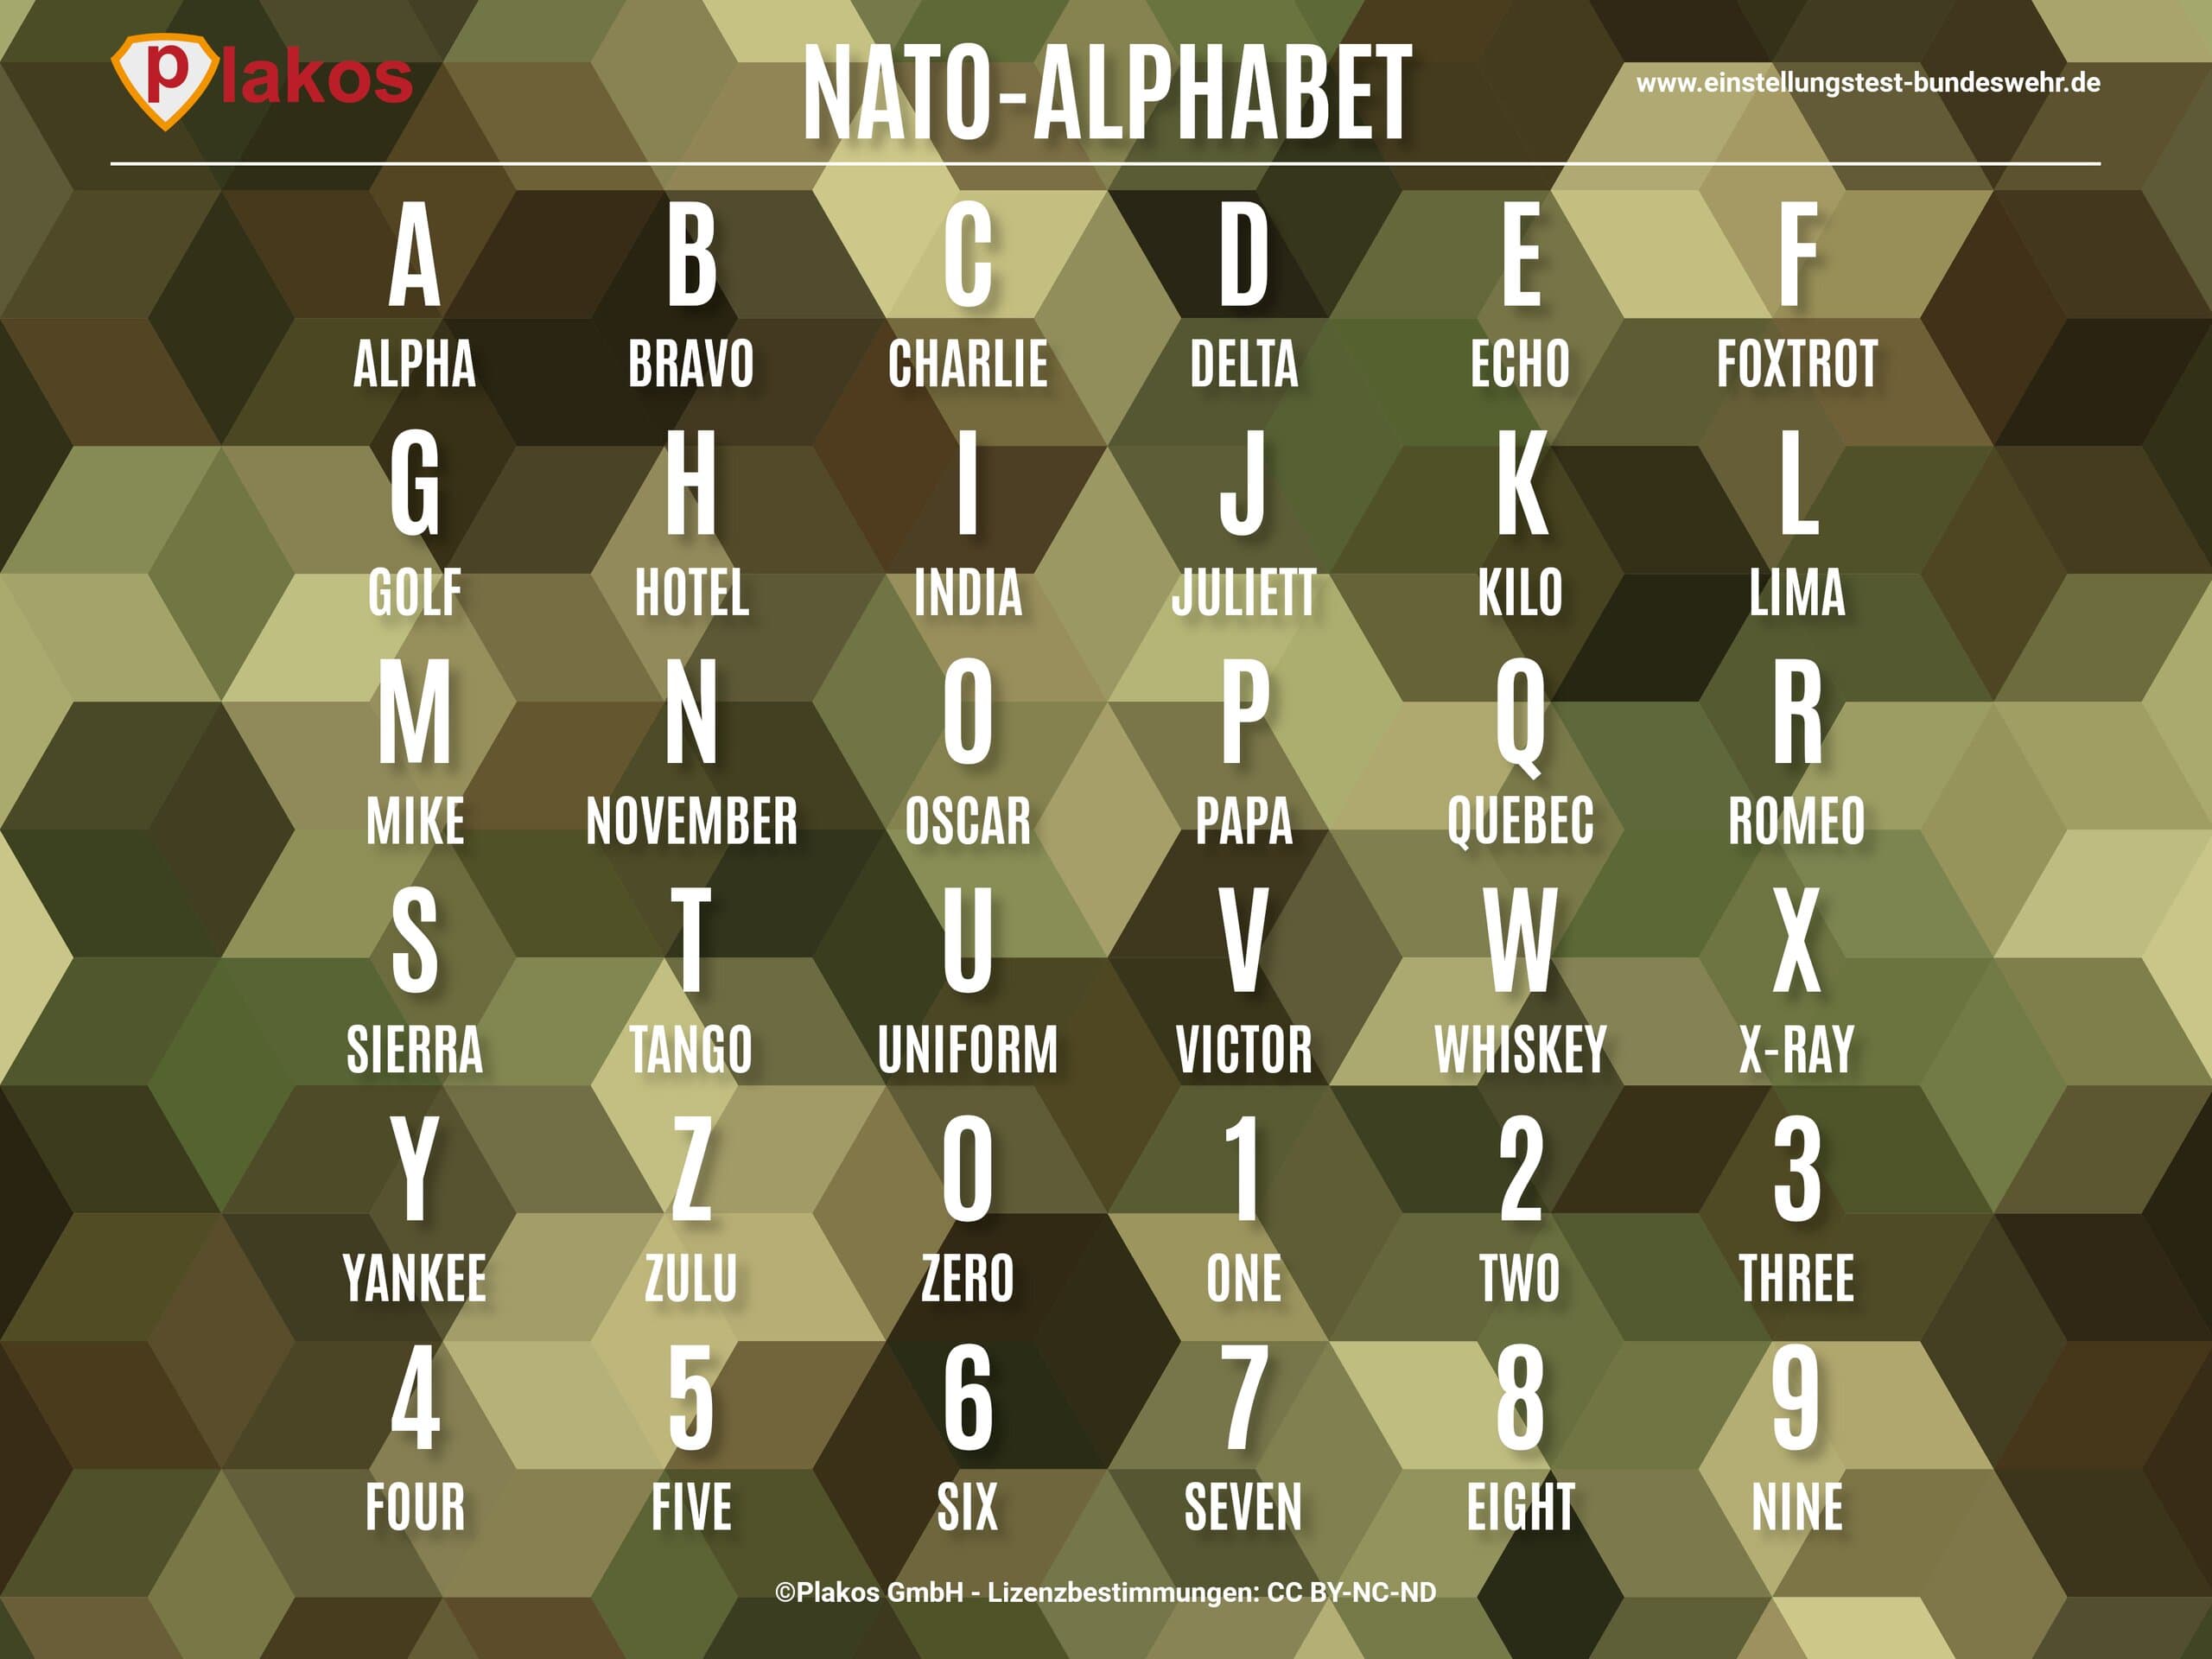 Nato-Alphabet Bundeswehr